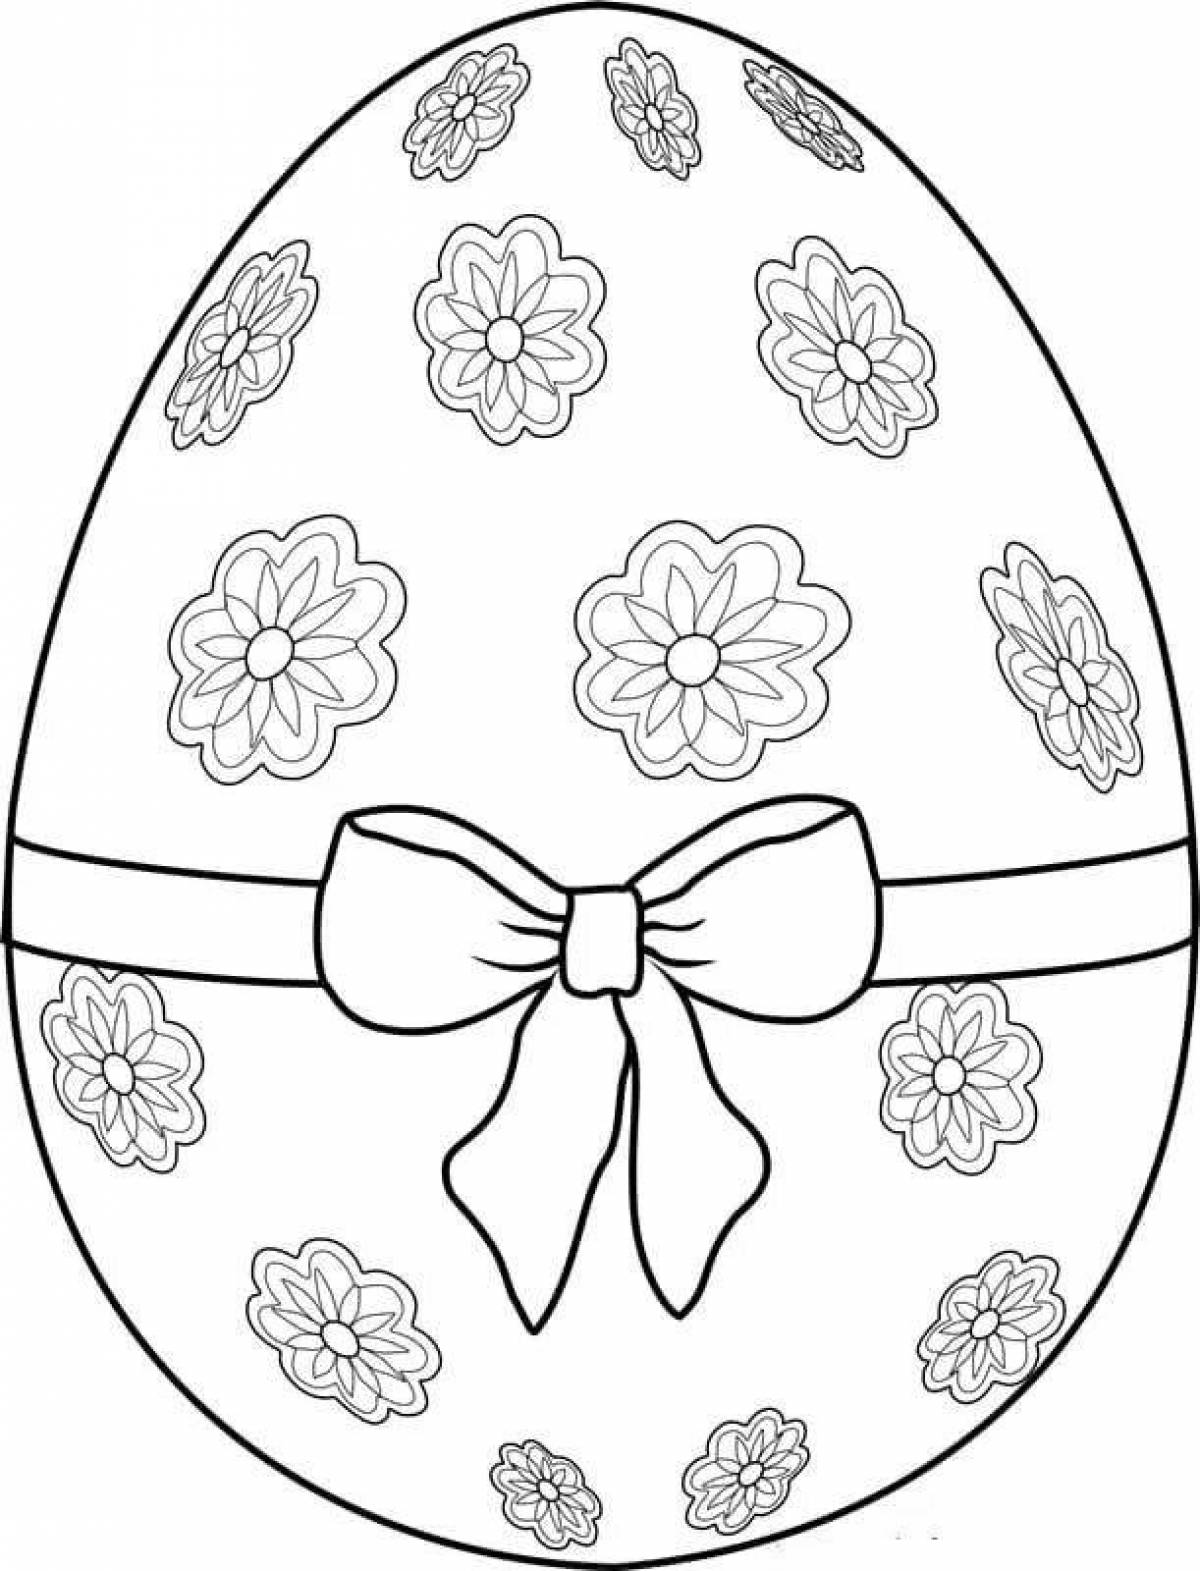 Пасхальное яйцо рисунок для детей. Пасхальное яйцо раскраска. Раскраски пасочных яиц. Яйца на Пасху раскраска. Пасхальное яйцо раскраска для детей.